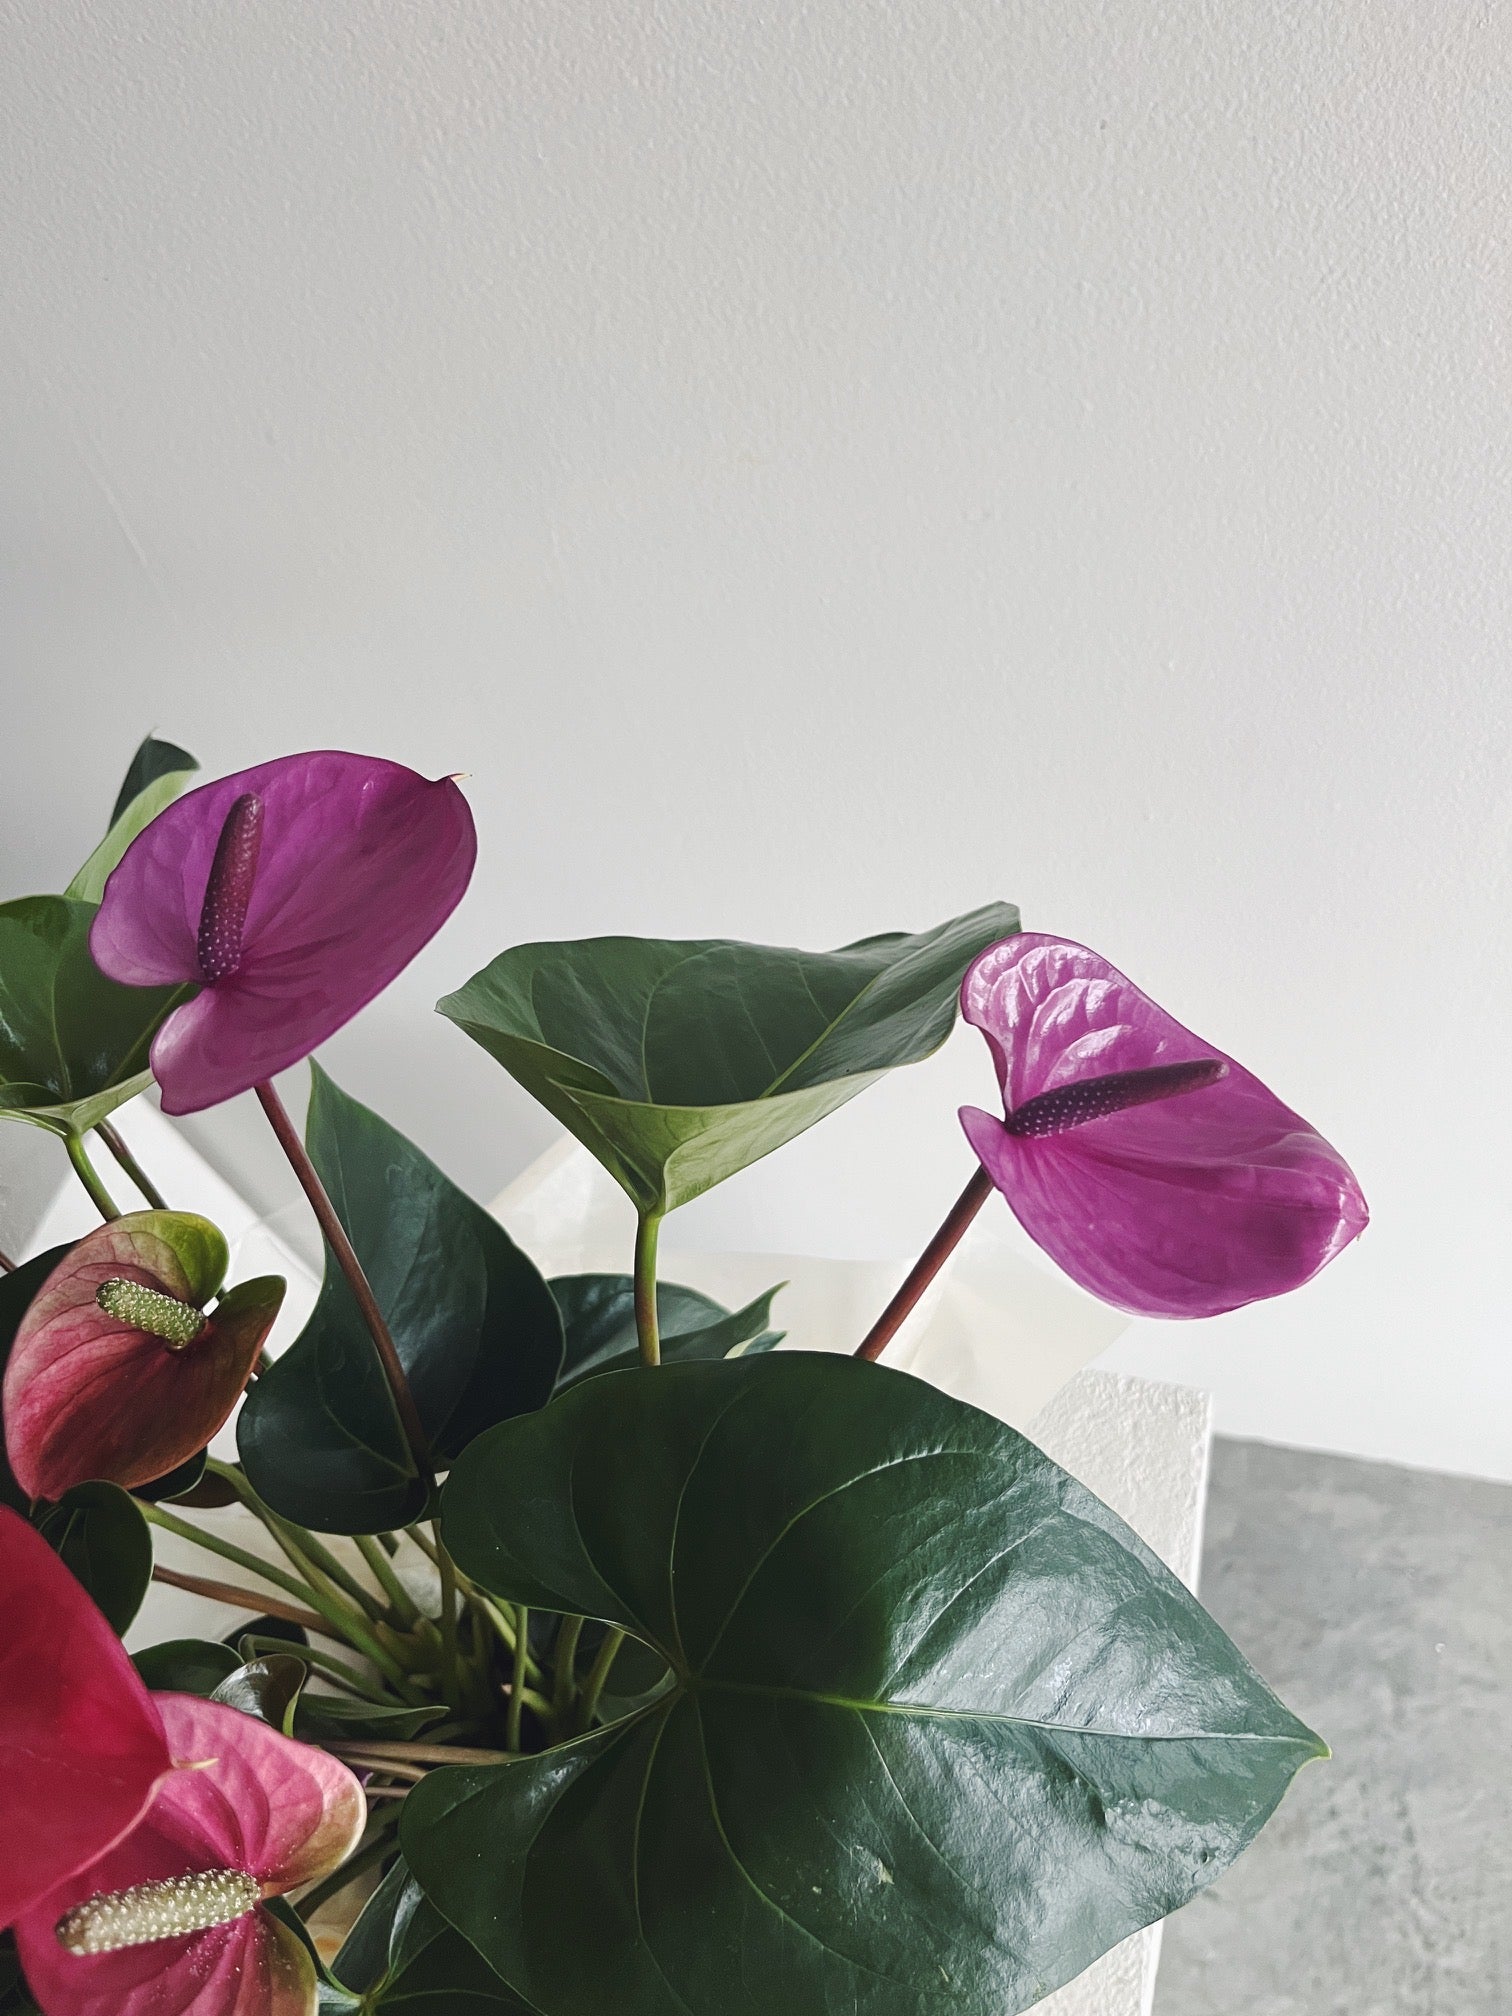 Flower Delivery Vancouver-Pink-purple Anthurium-Plants-Florist-The Wild Bunch Flower Shop